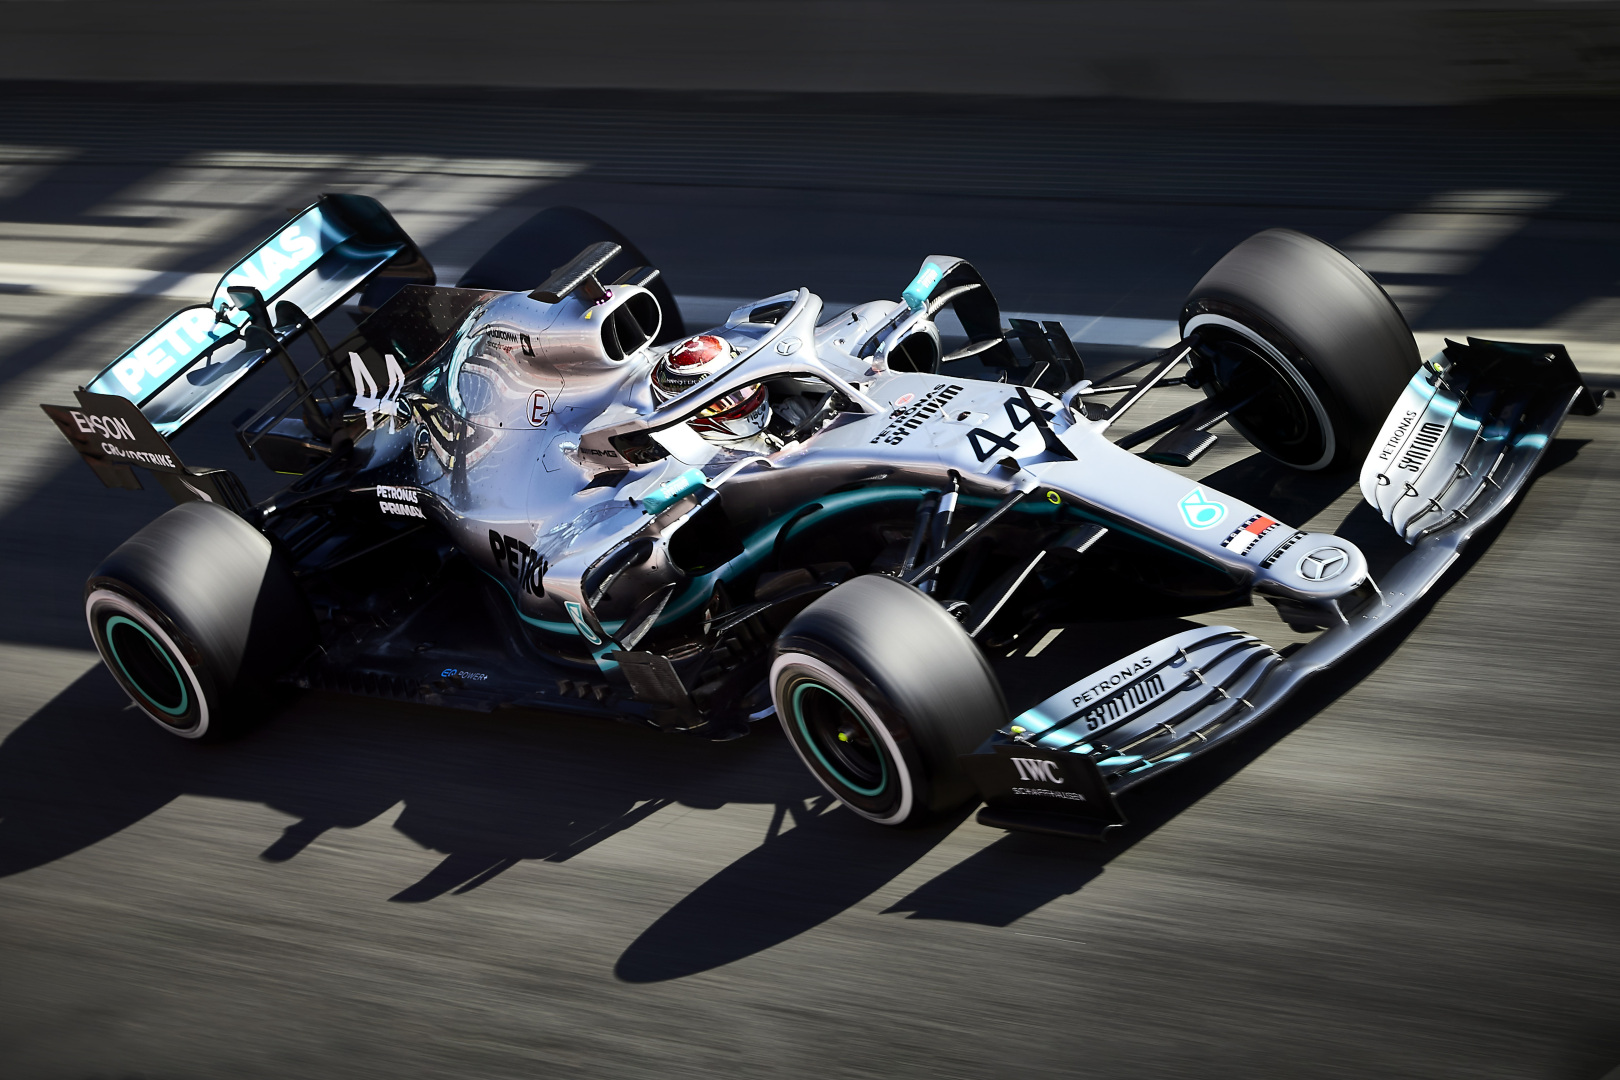 S. Vettelį nustebino atnaujintų „Mercedes“ bolido detalių kiekis